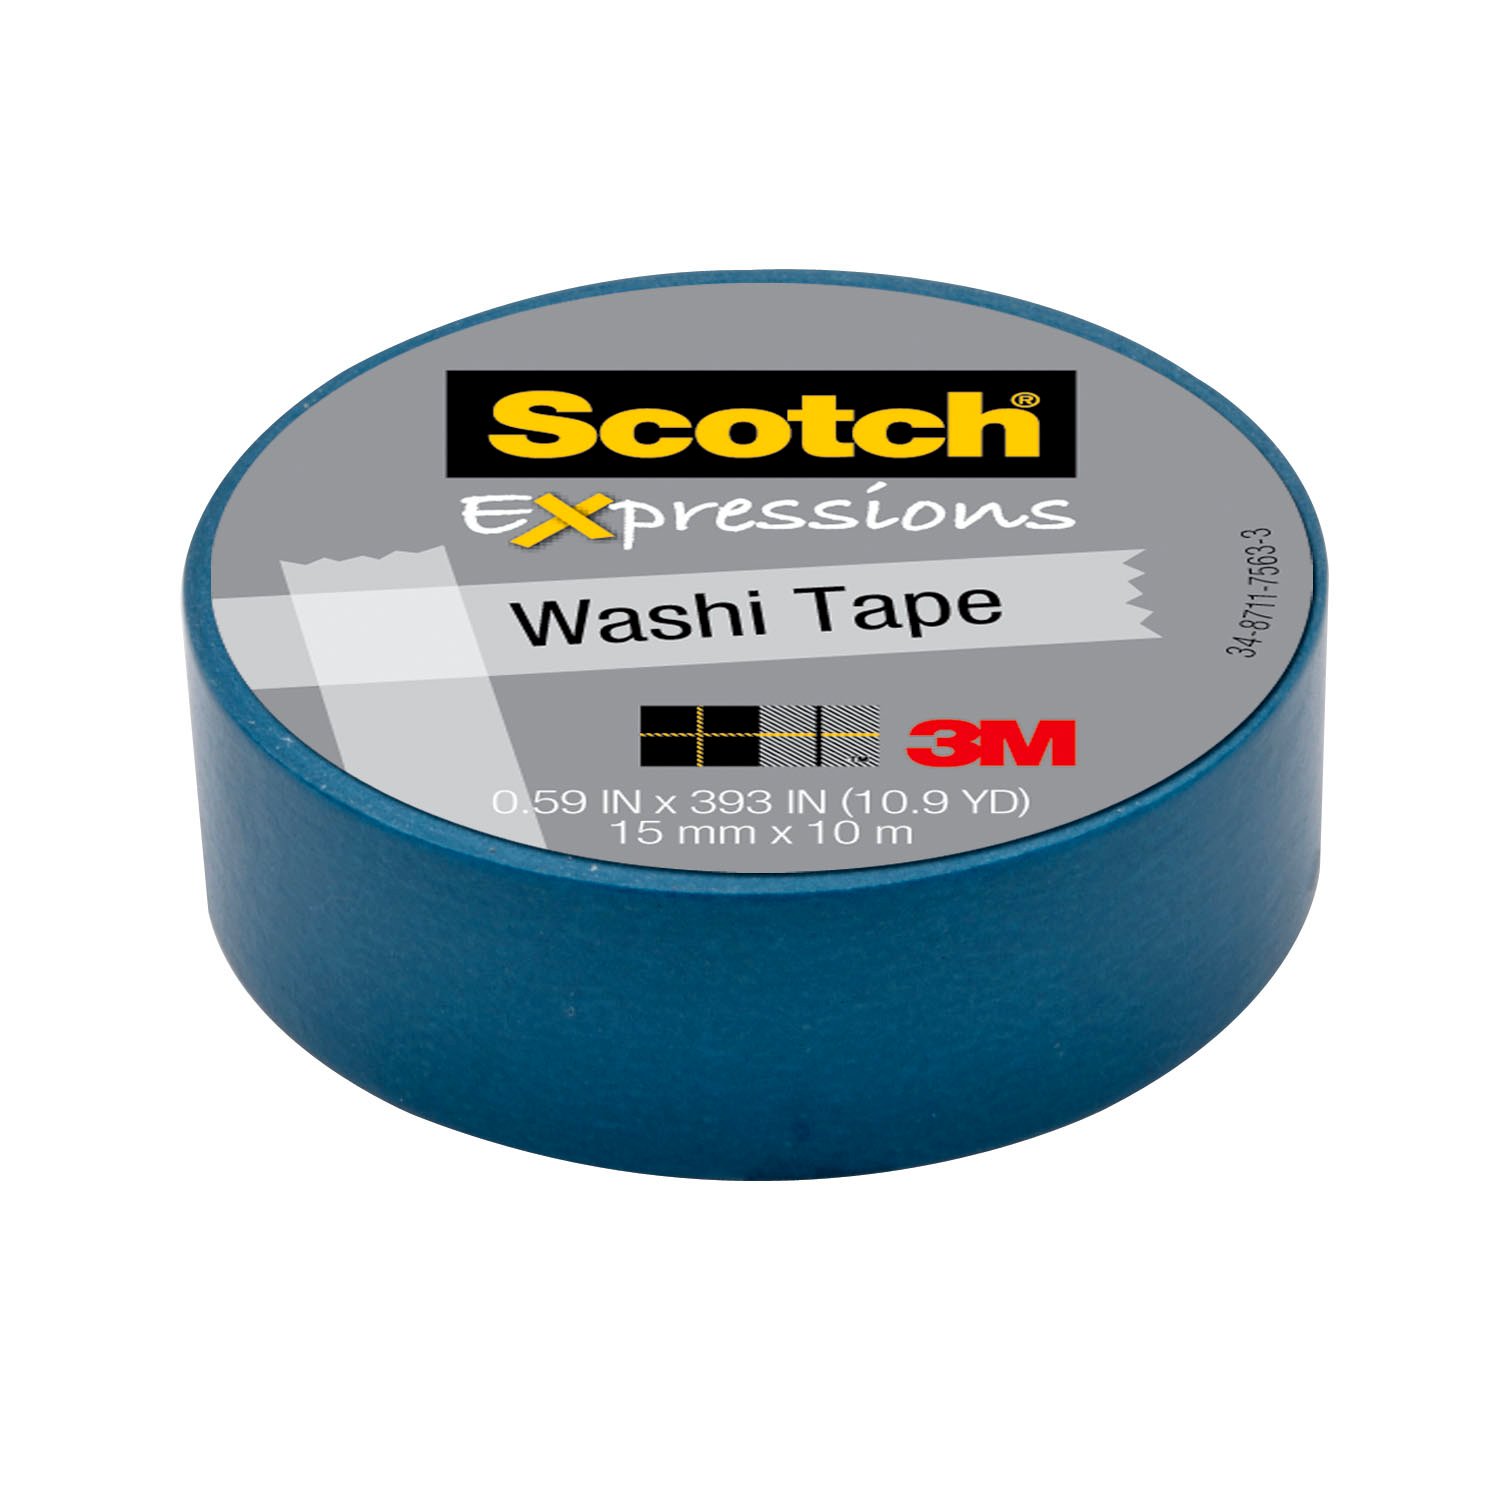 7000048130 - Scotch Expressions Washi Tape C314-BLU, .59 in x 393 in (15 mm x 10 m)
Blue